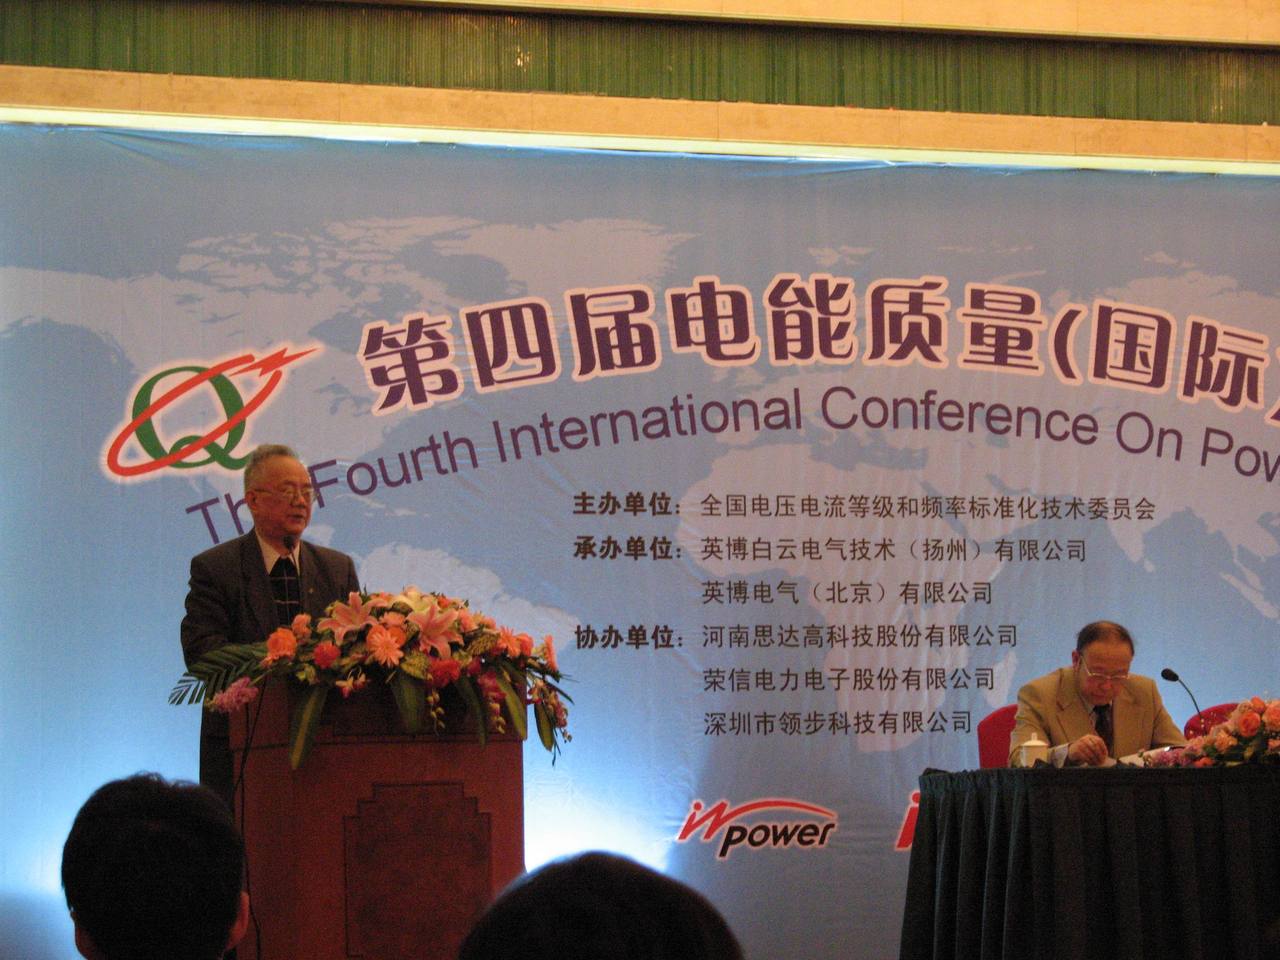 中國電力科學研究院專家林海雪在講演